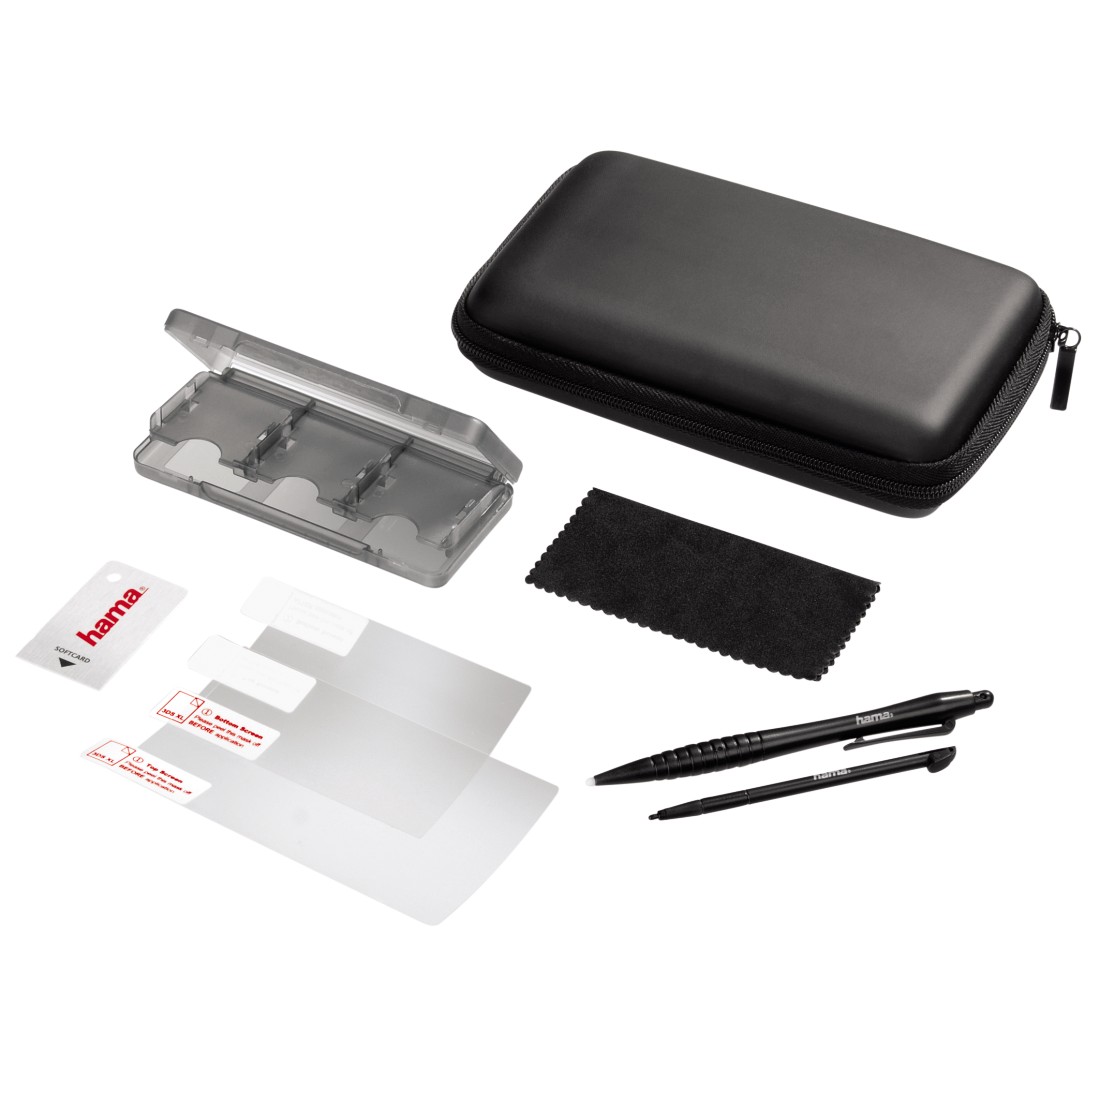 00114190 Hama "8in1" Starter Kit for Nintendo 3DS XL, black